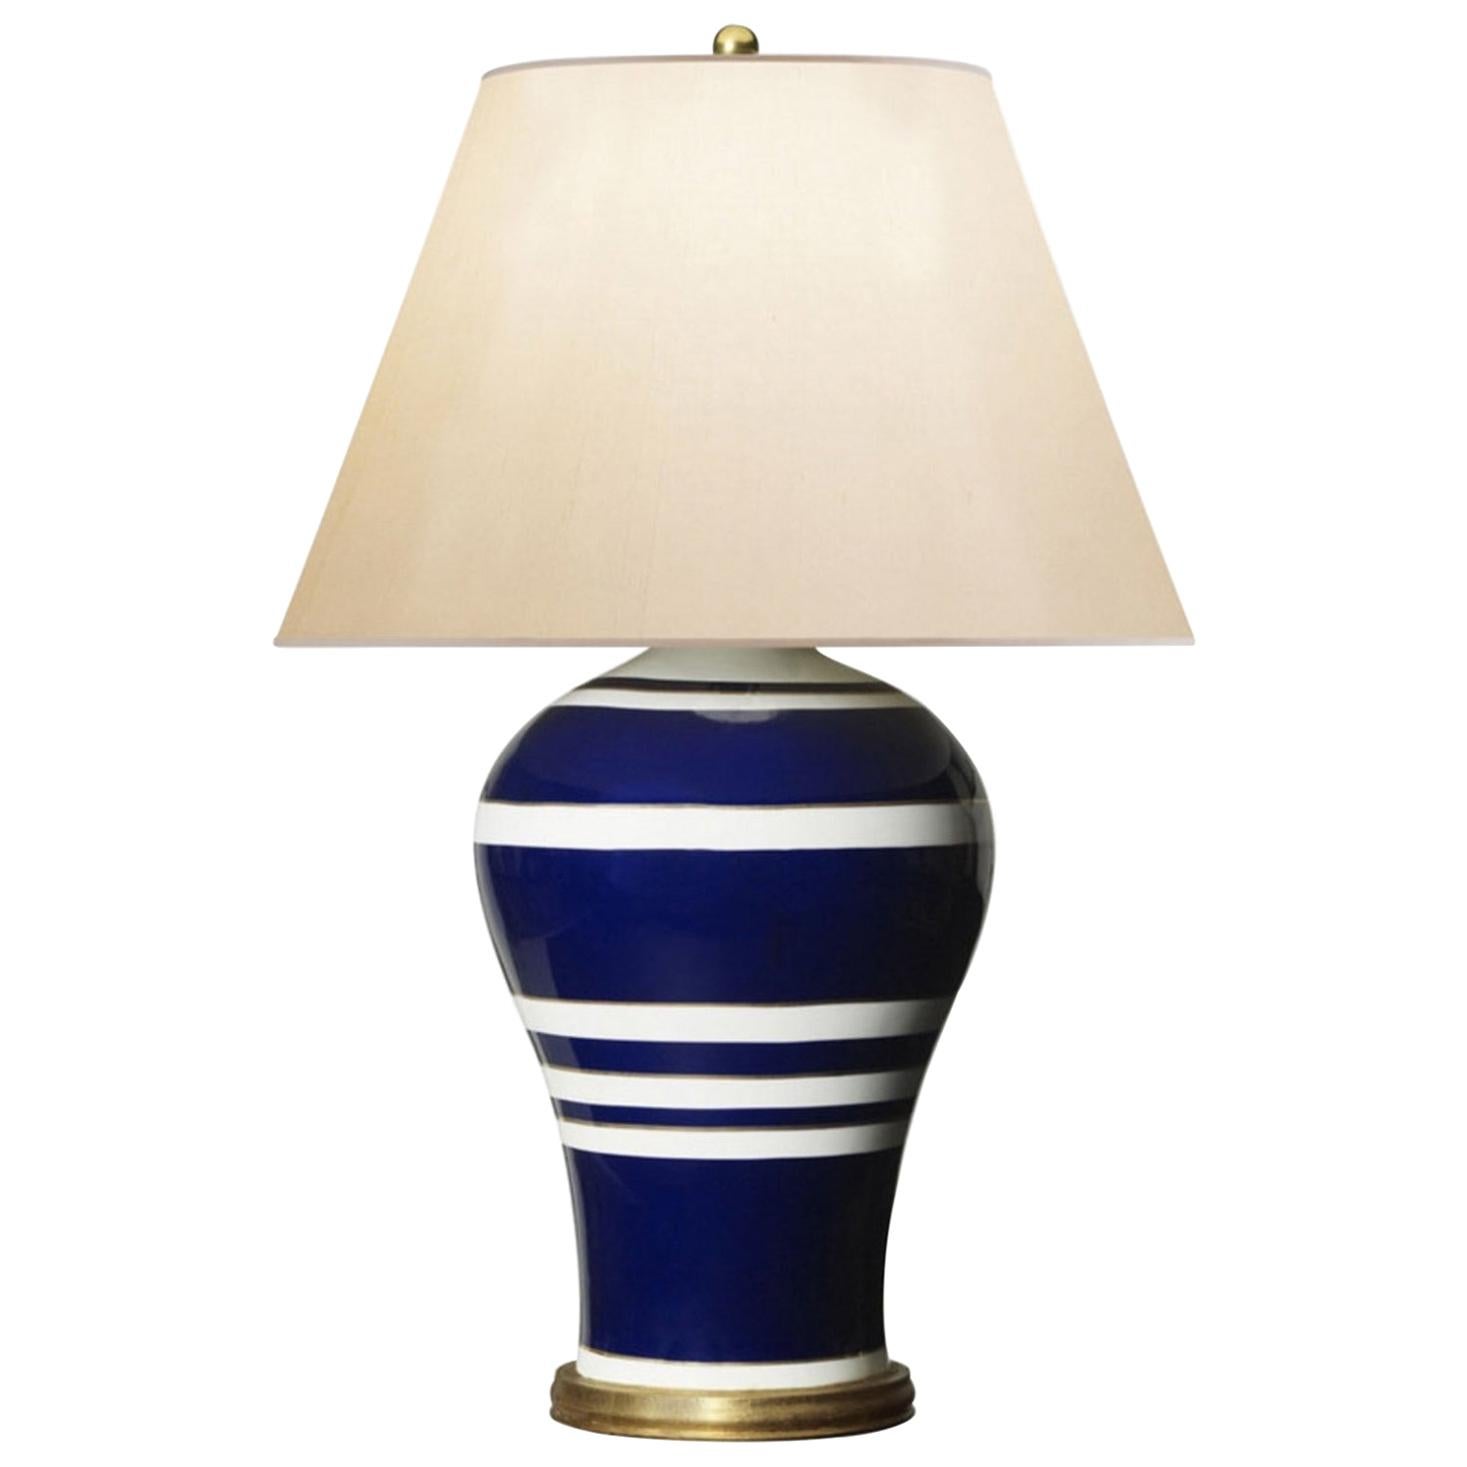 Tischlampe aus glasiertem Porzellan in Blau und Weiß von Ralph Lauren im modernen Stil